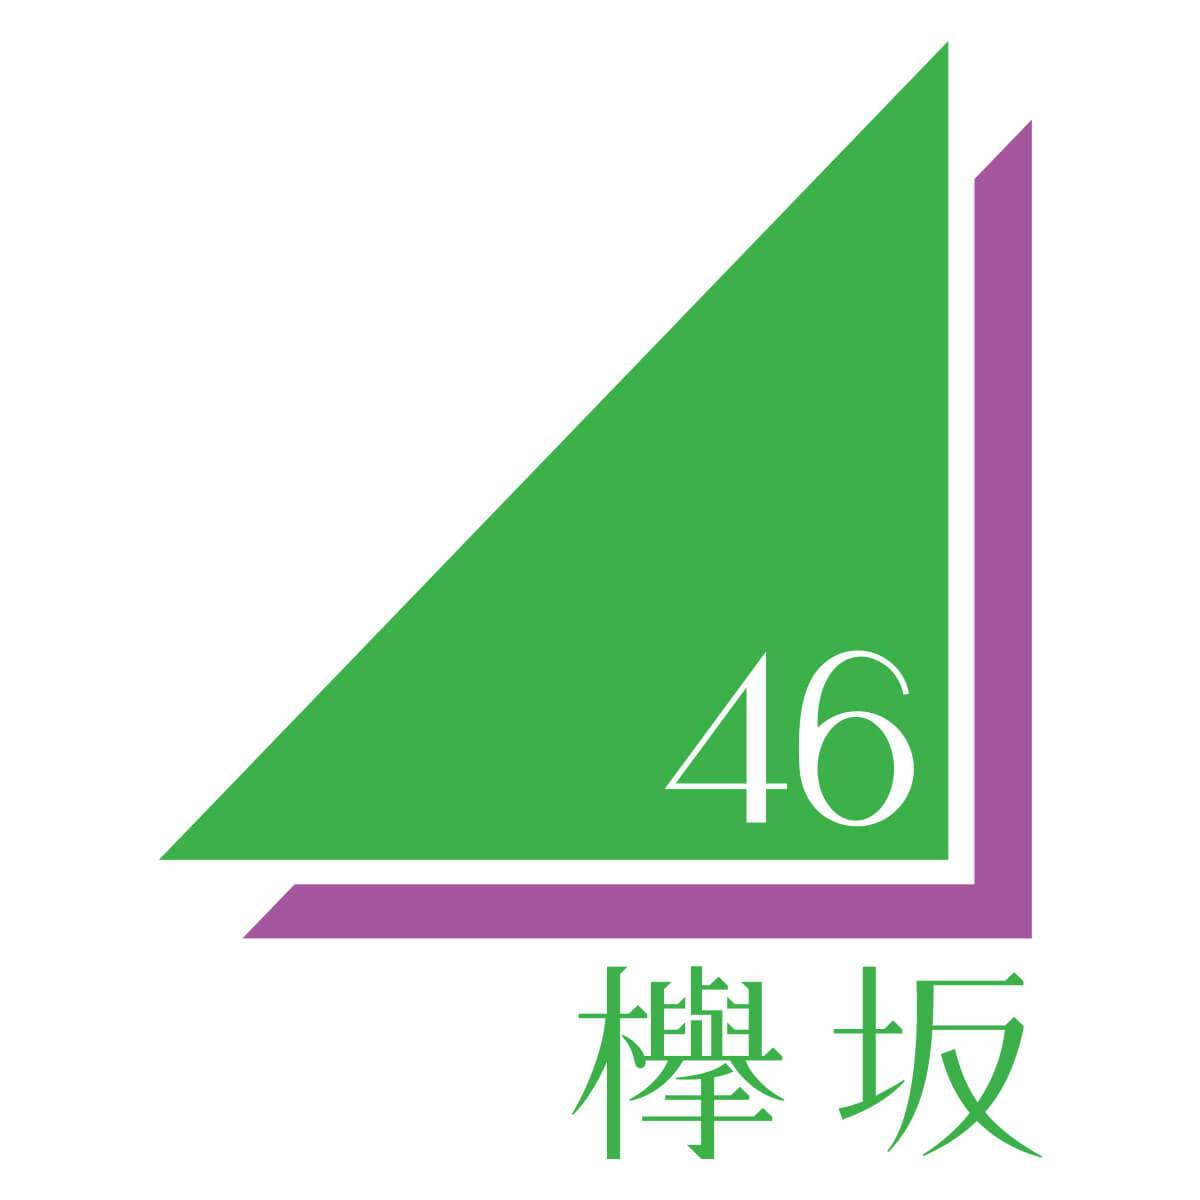 欅坂46 サイレントマジョリティー の歌詞の意味 フォーメーション Mvを徹底解剖 動画付き Aikru アイクル かわいい女の子の情報まとめサイト